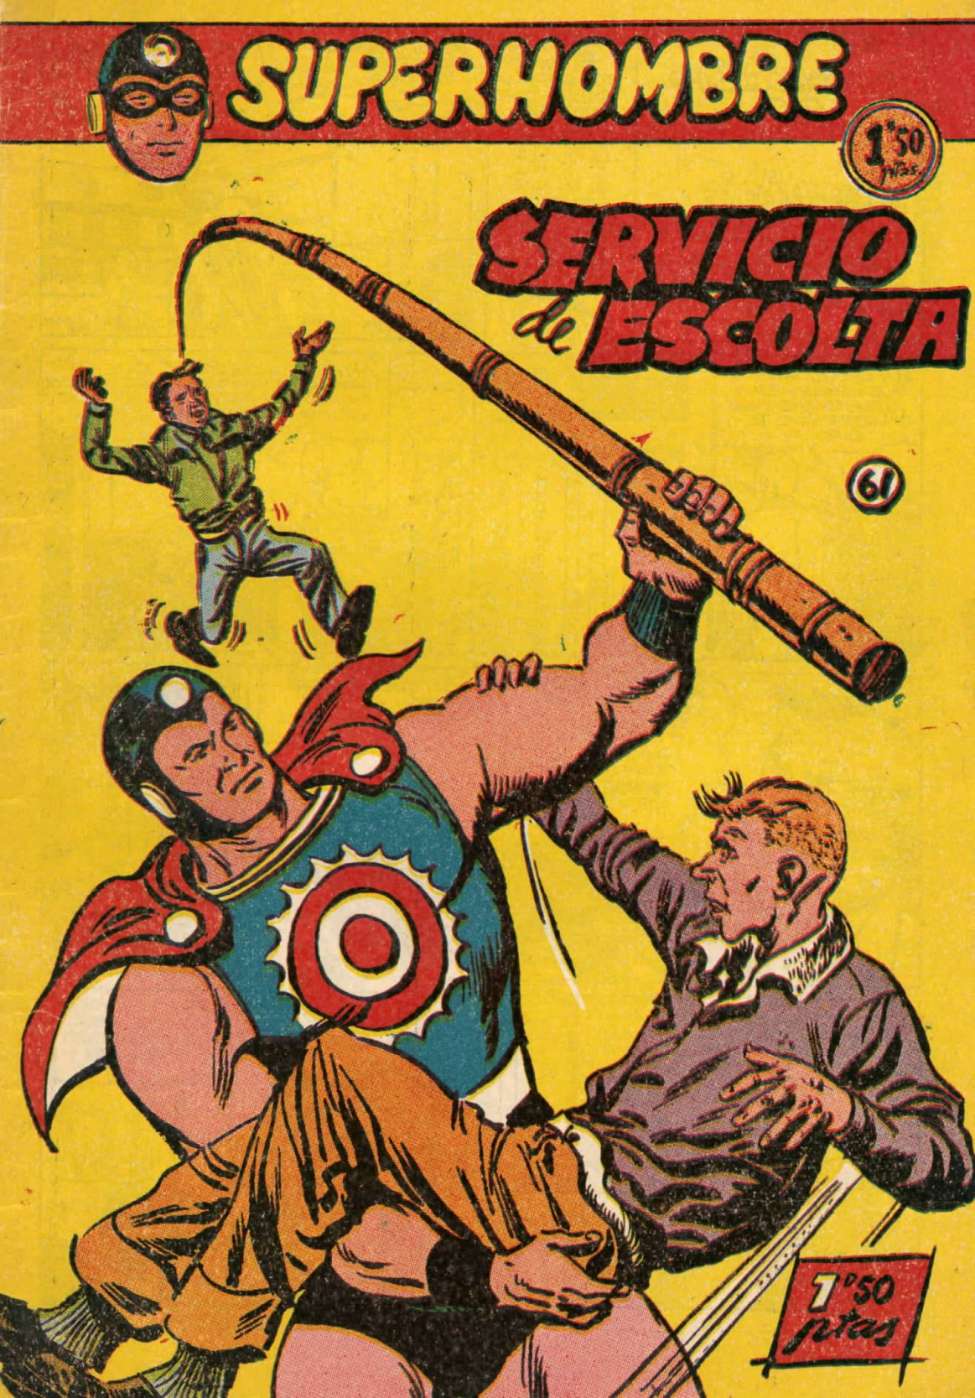 Book Cover For SuperHombre 61 Servicio de escolta